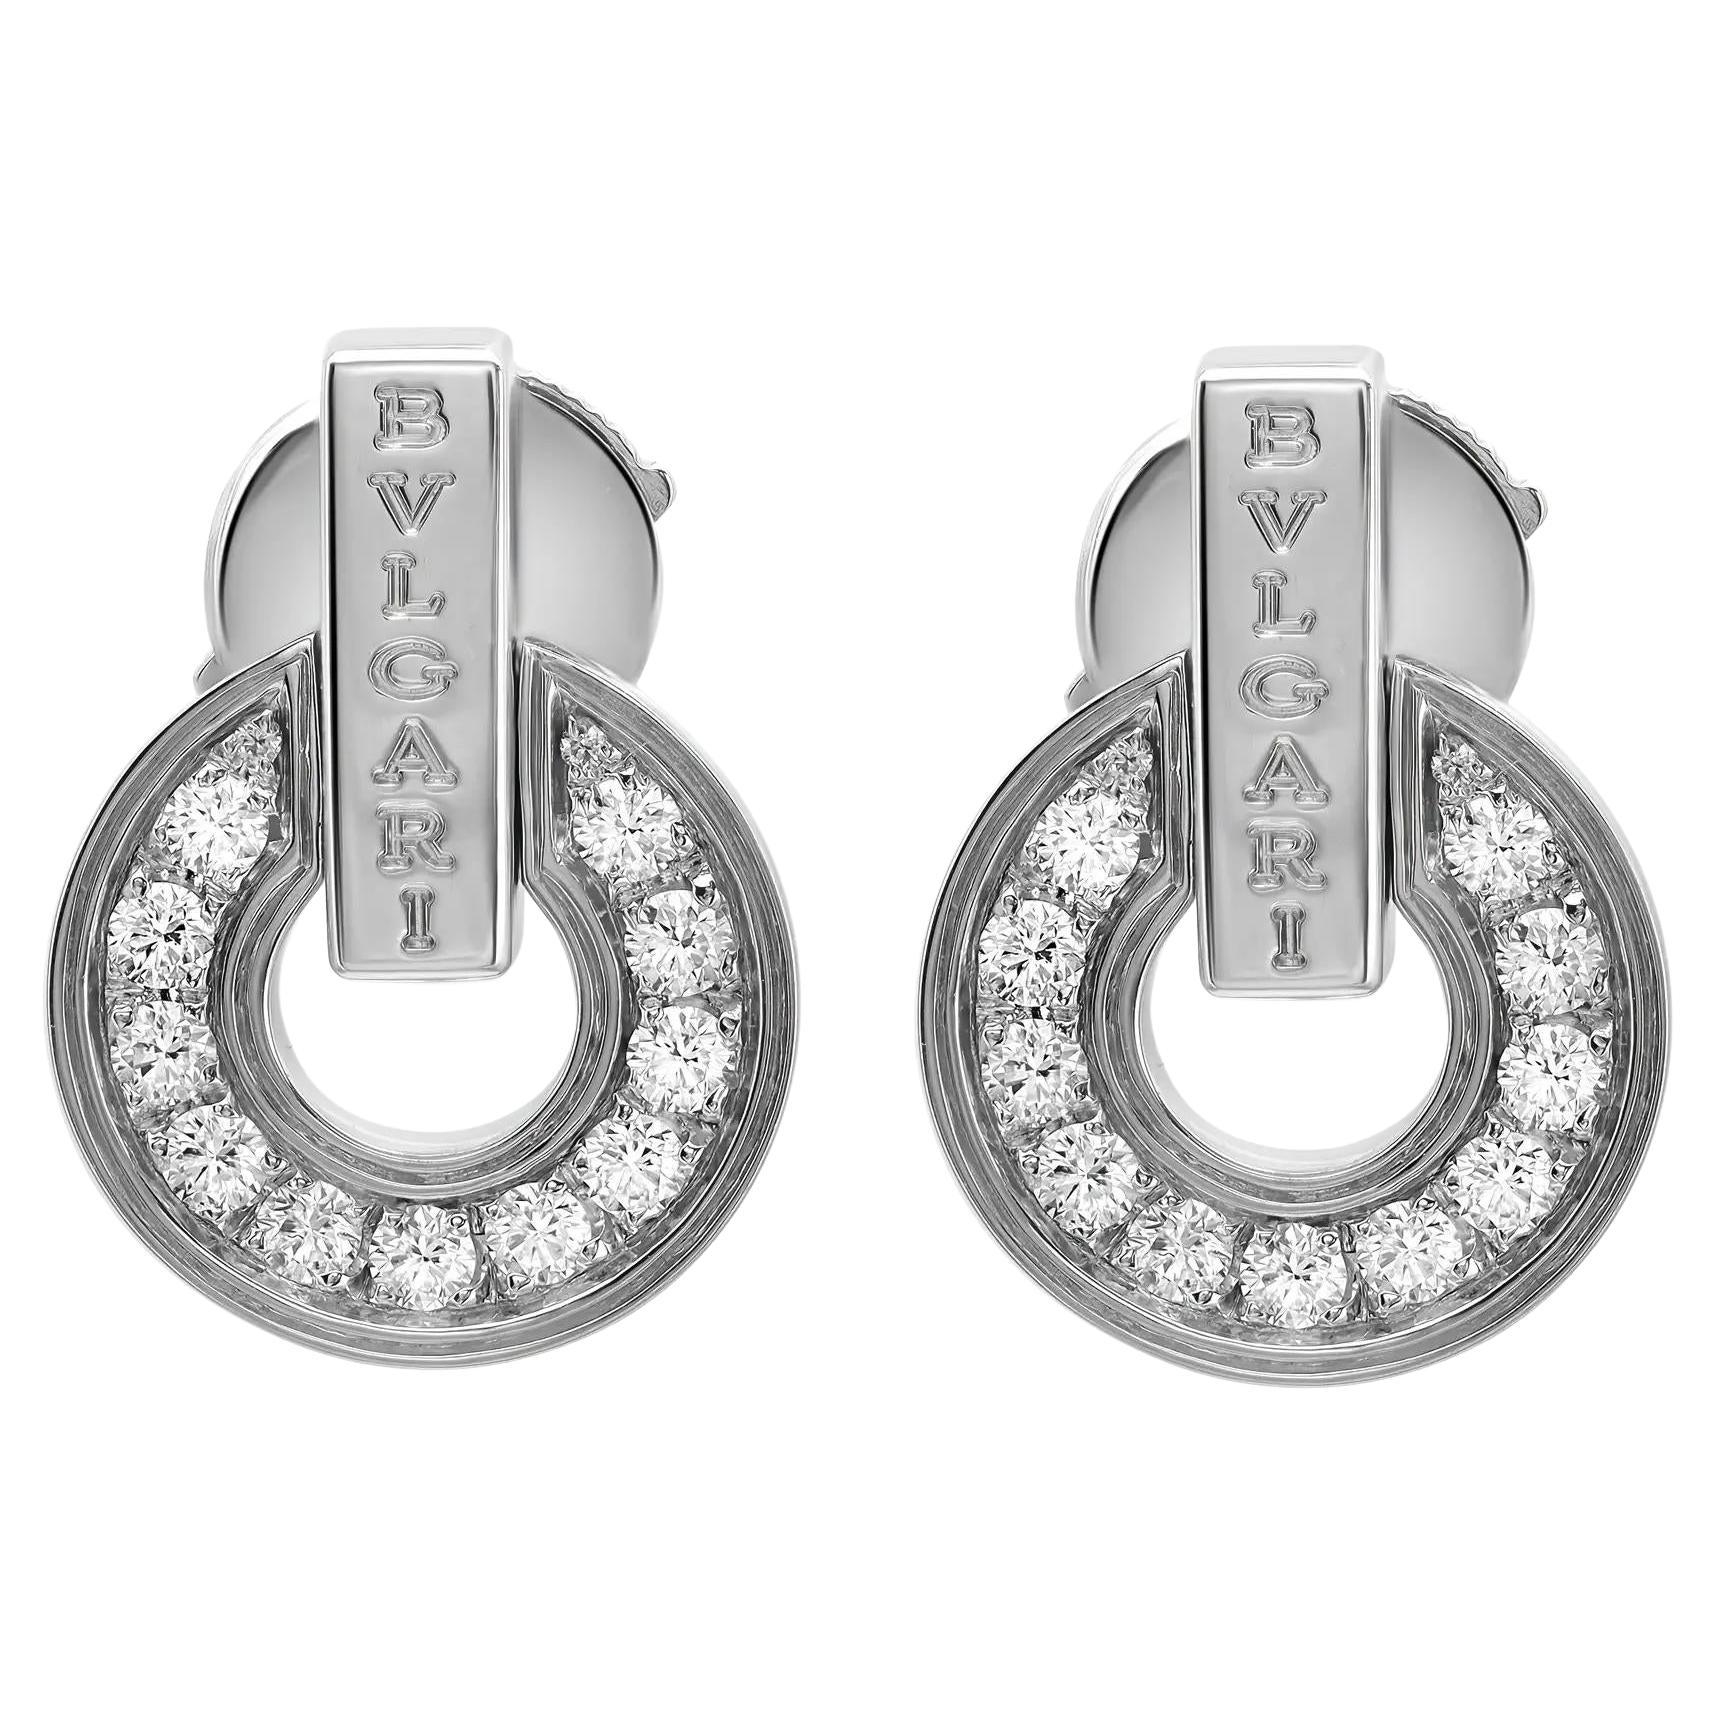 Bvlgari Bvlgari Diamond Openwork Earrings 18K White Gold